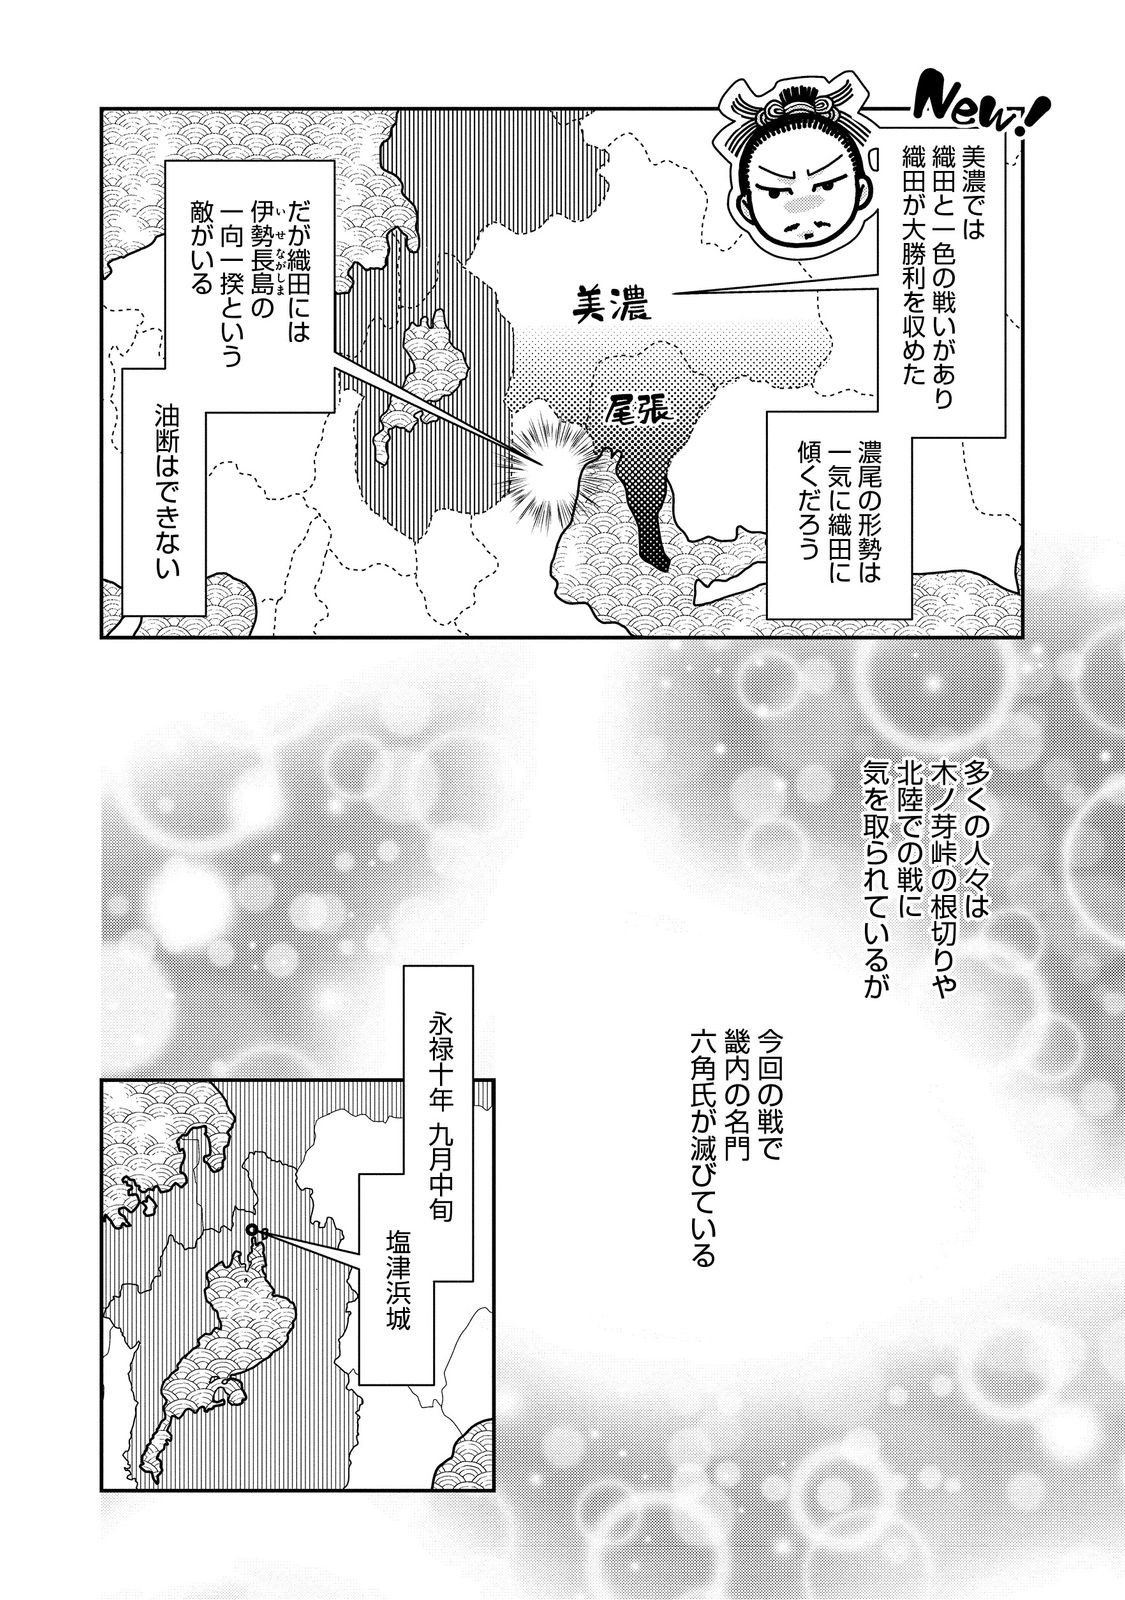 Afumi no Umi – Minamo ga Yureru Toki - Chapter 42 - Page 18